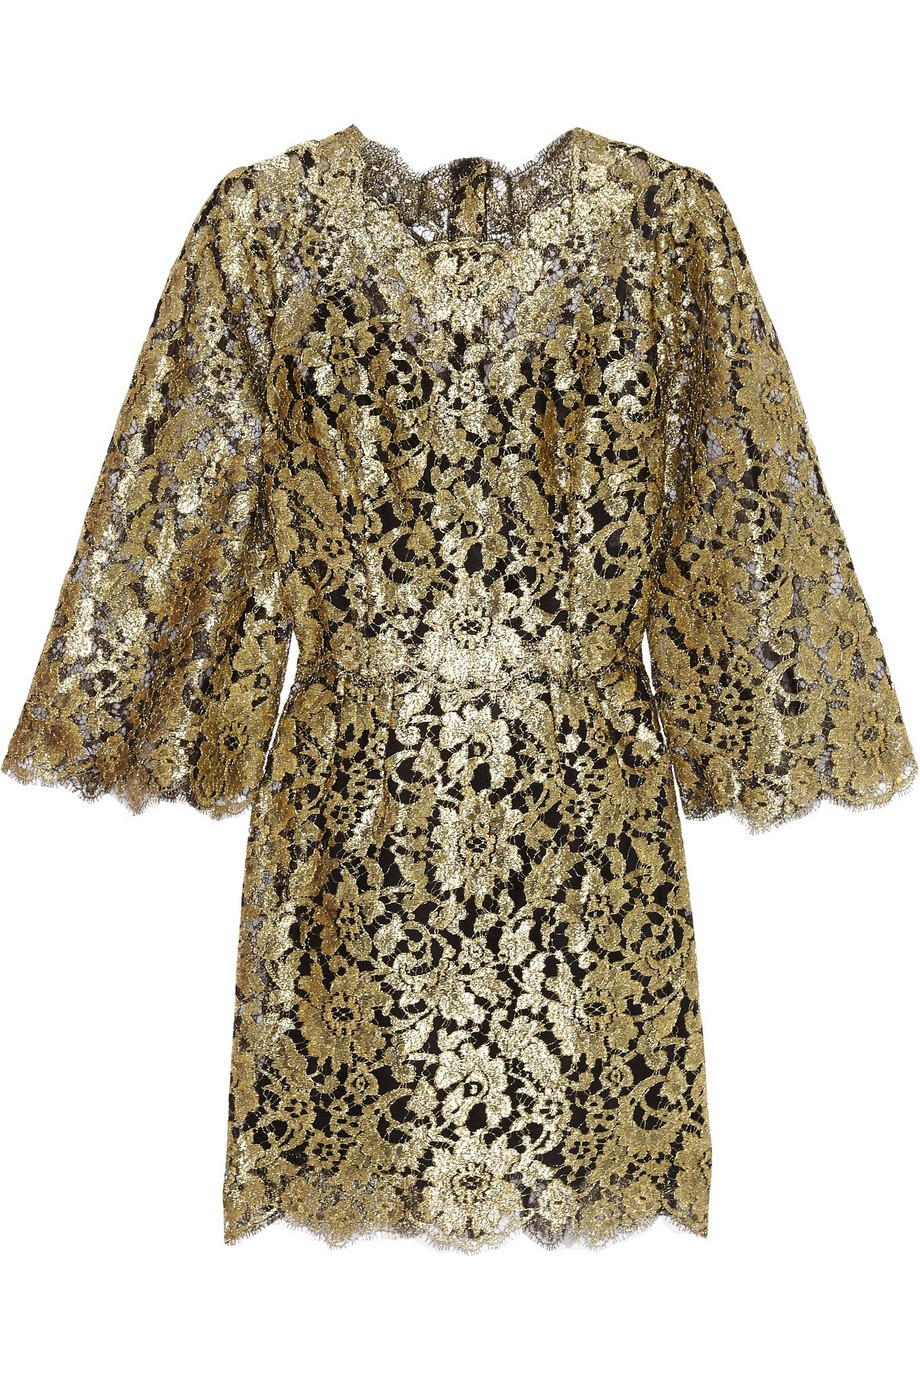 Vestido Dolce & Gabbana (Foto: Reprodução)